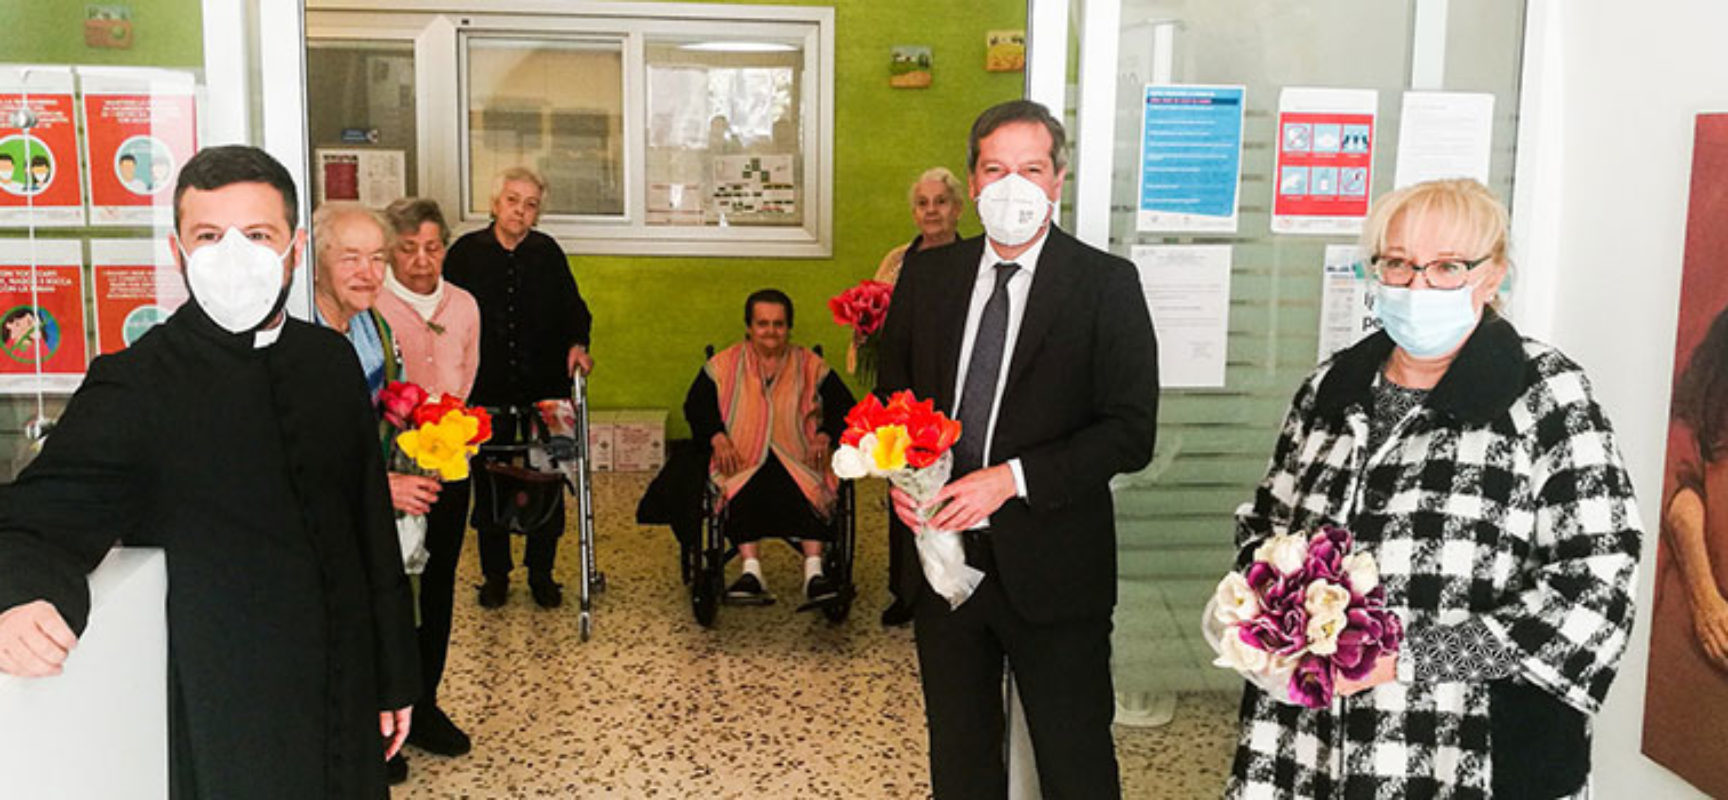 Comune dona 200 tulipani sospesi a RSA, Angarano: “Far sentire affetto e vicinanza” / FOTO